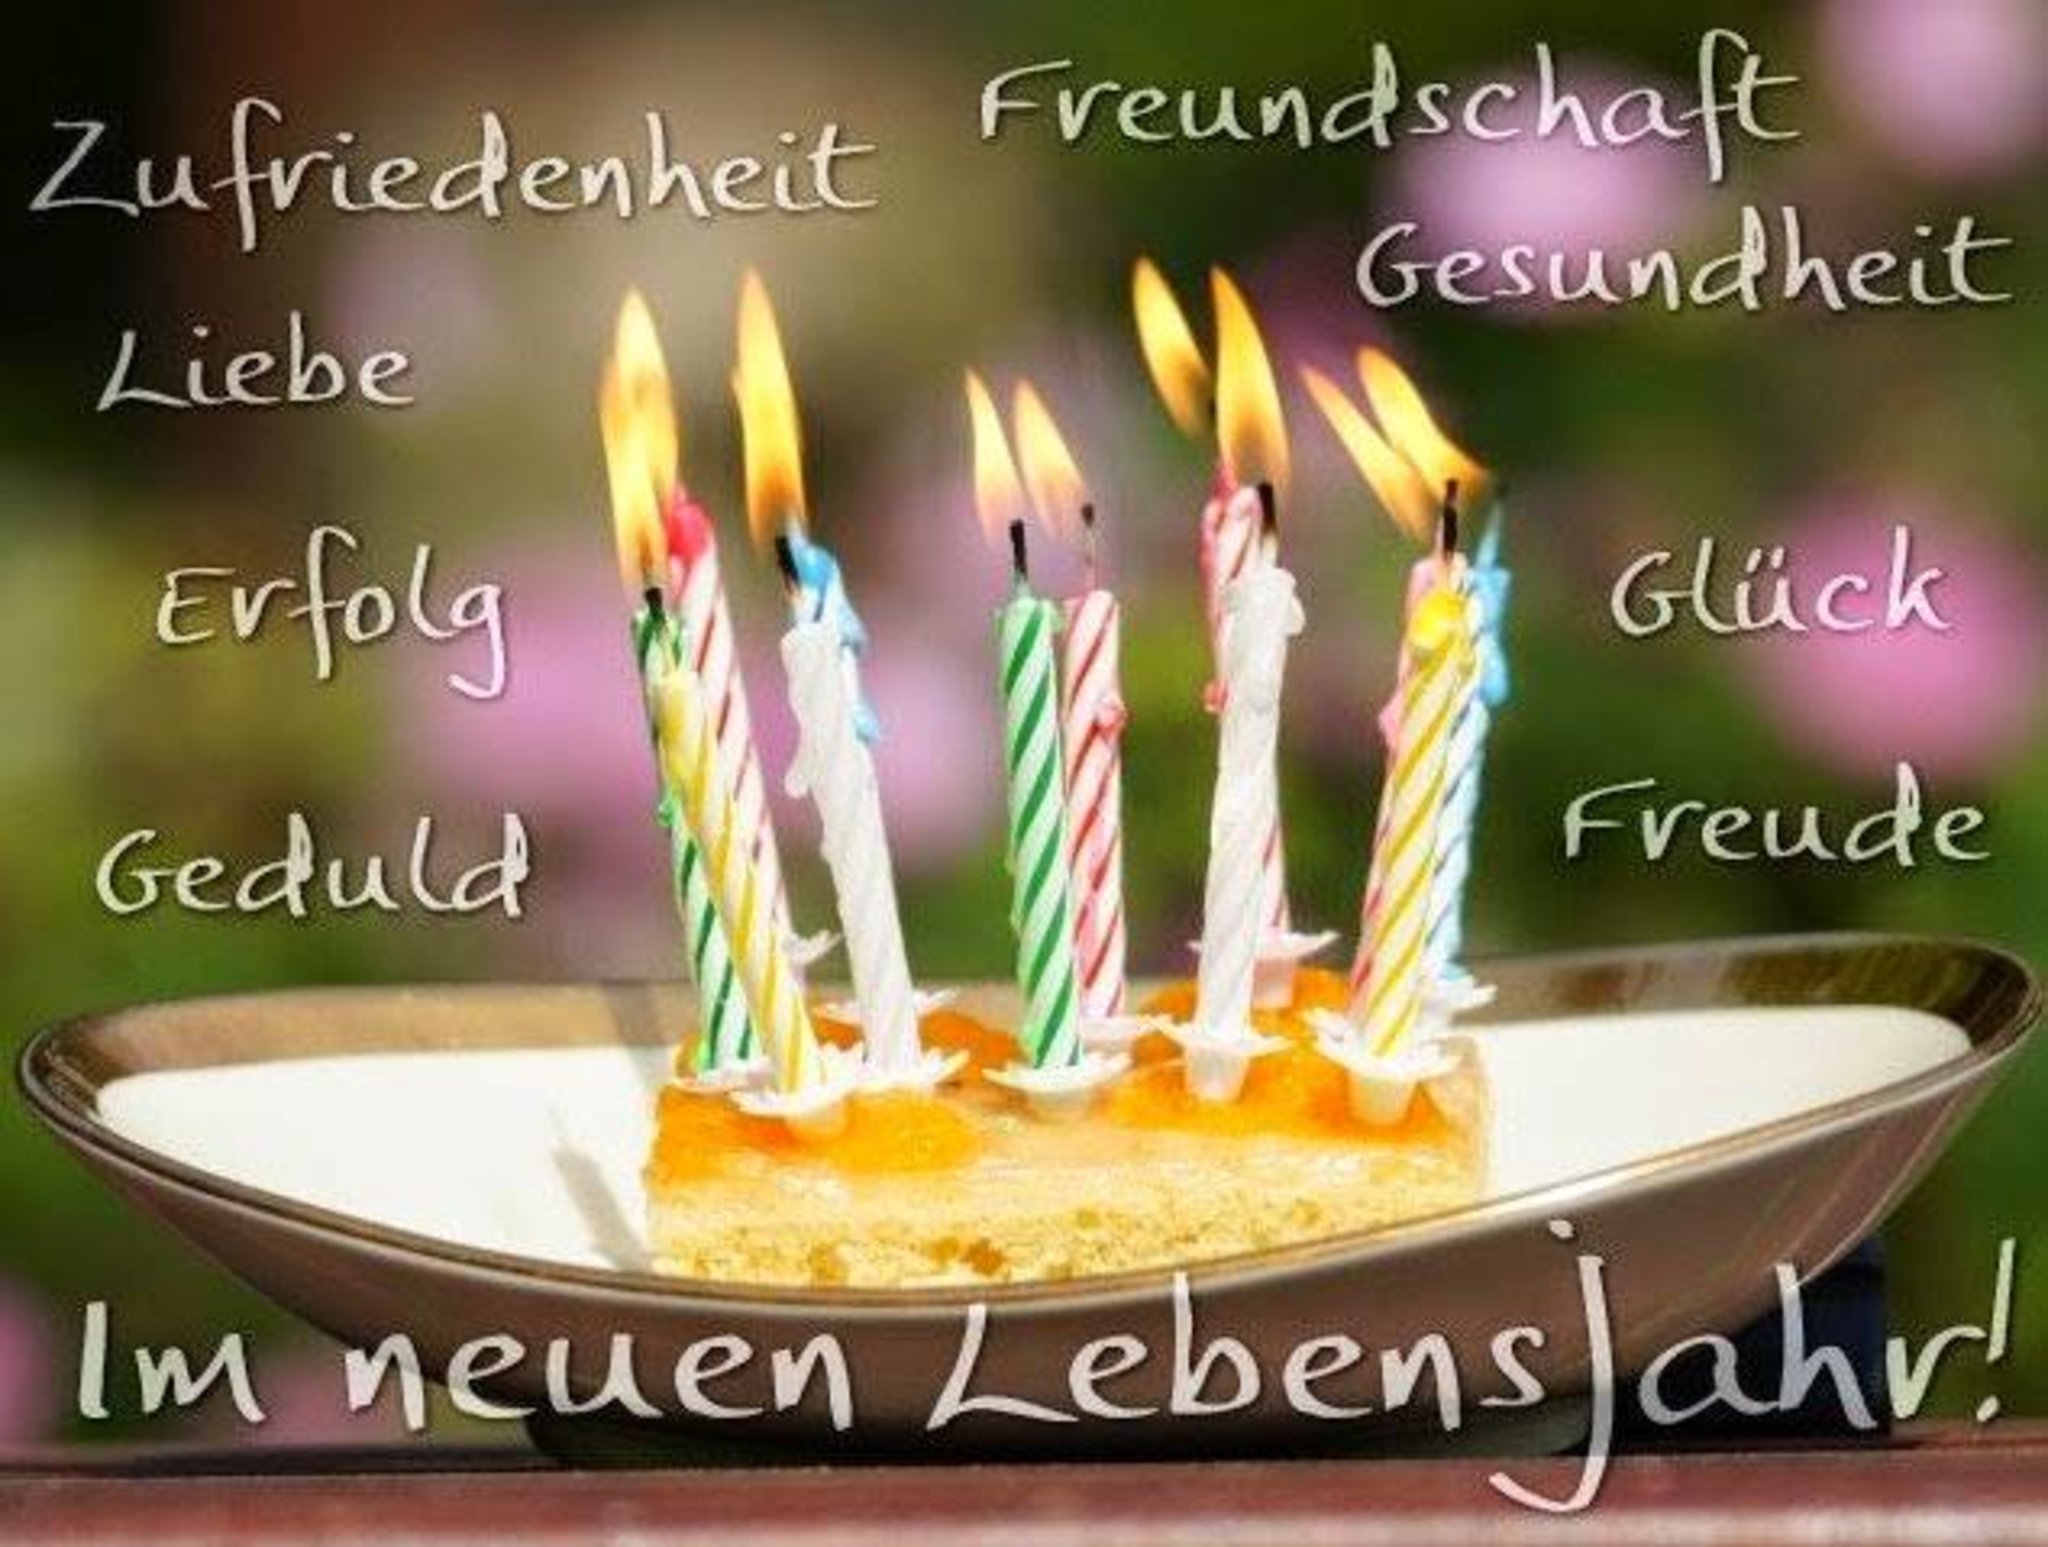 С днем рождения на немецком языке женщине